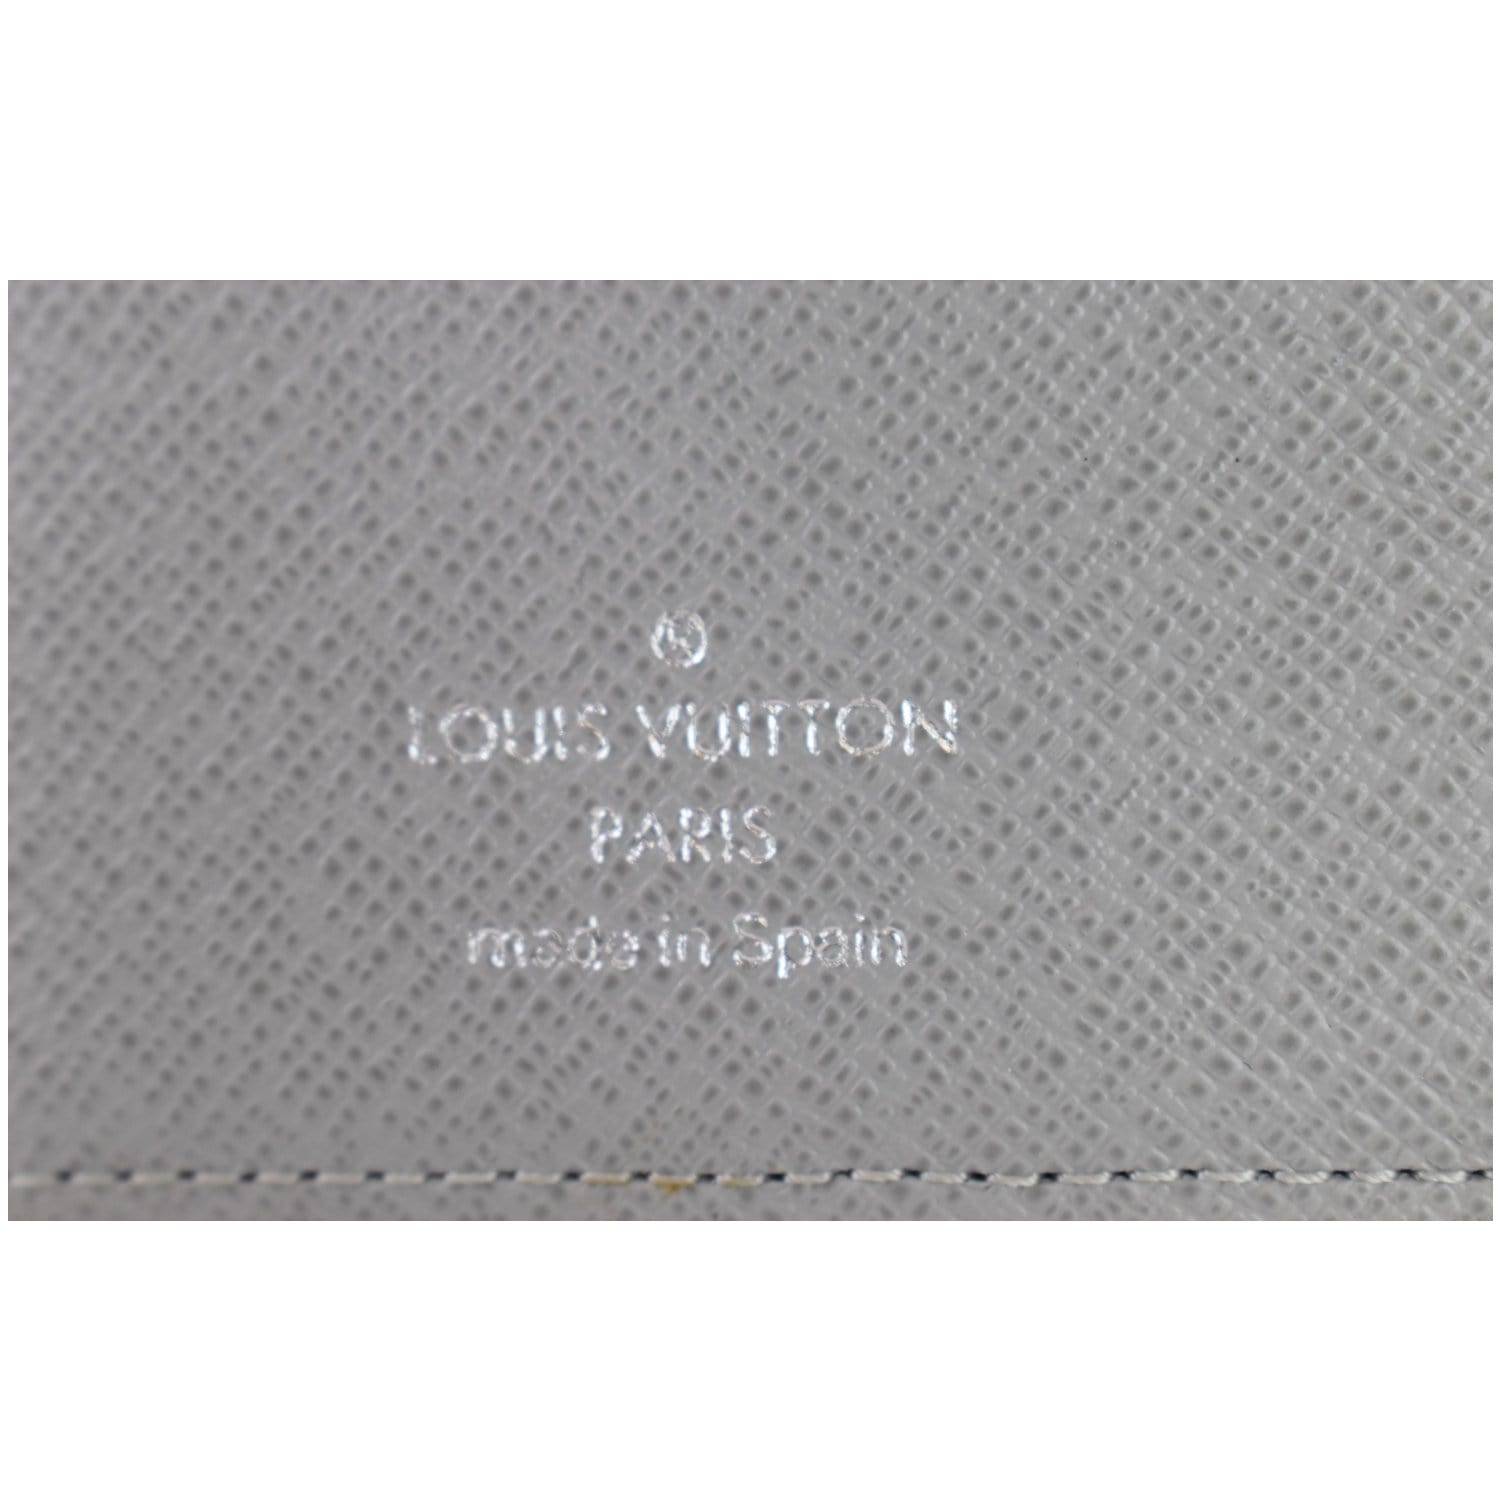 Louis Vuitton Damier Graphite Medium Agenda Cover – The Find Studio